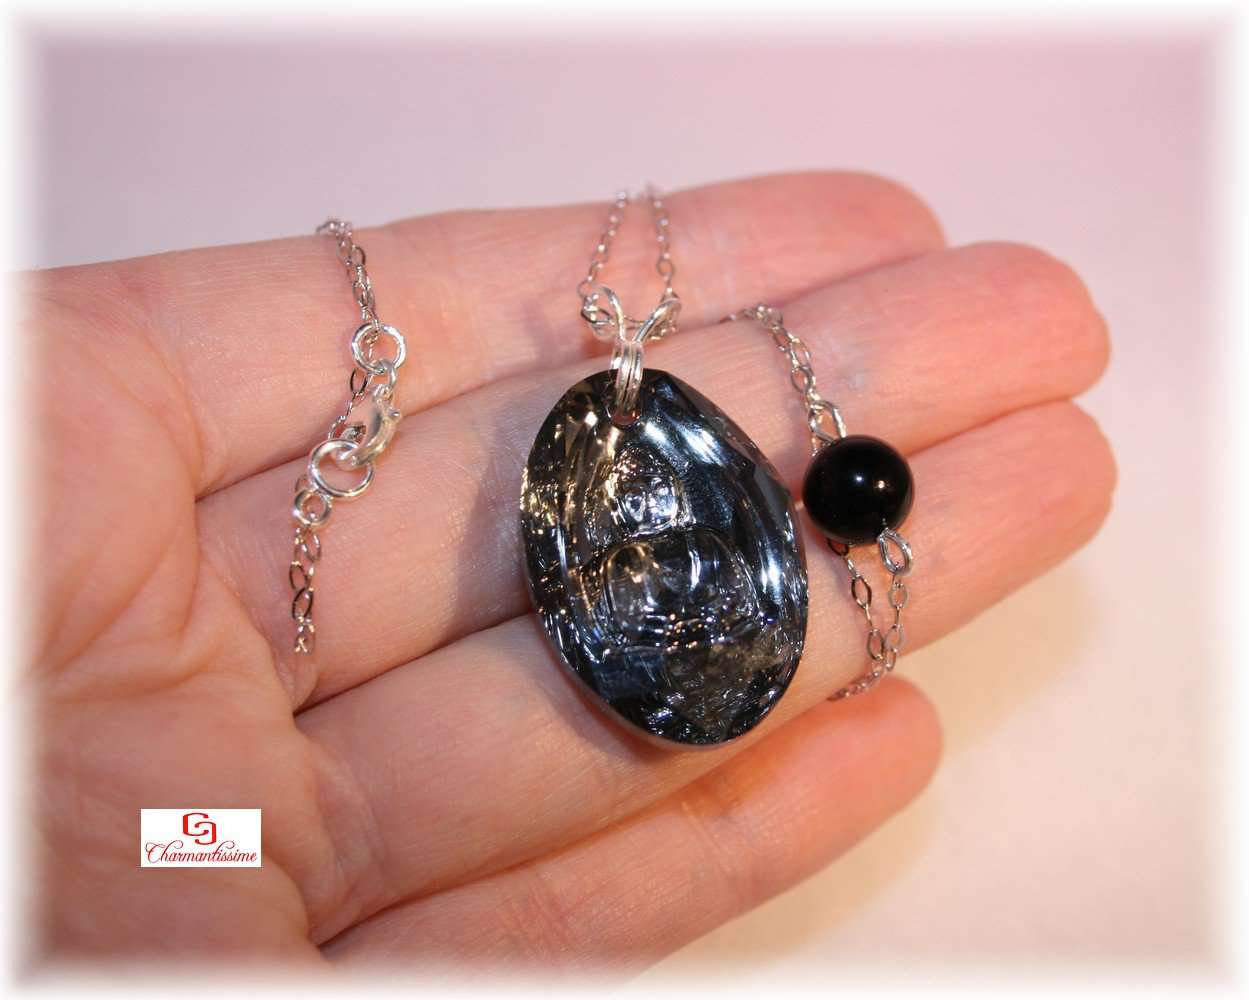 Collier Bouddha cristal noir swarovski perle tourmaline noire Chaine argent. Collier religieux bouddhique noir pour mariage et cérémonie.